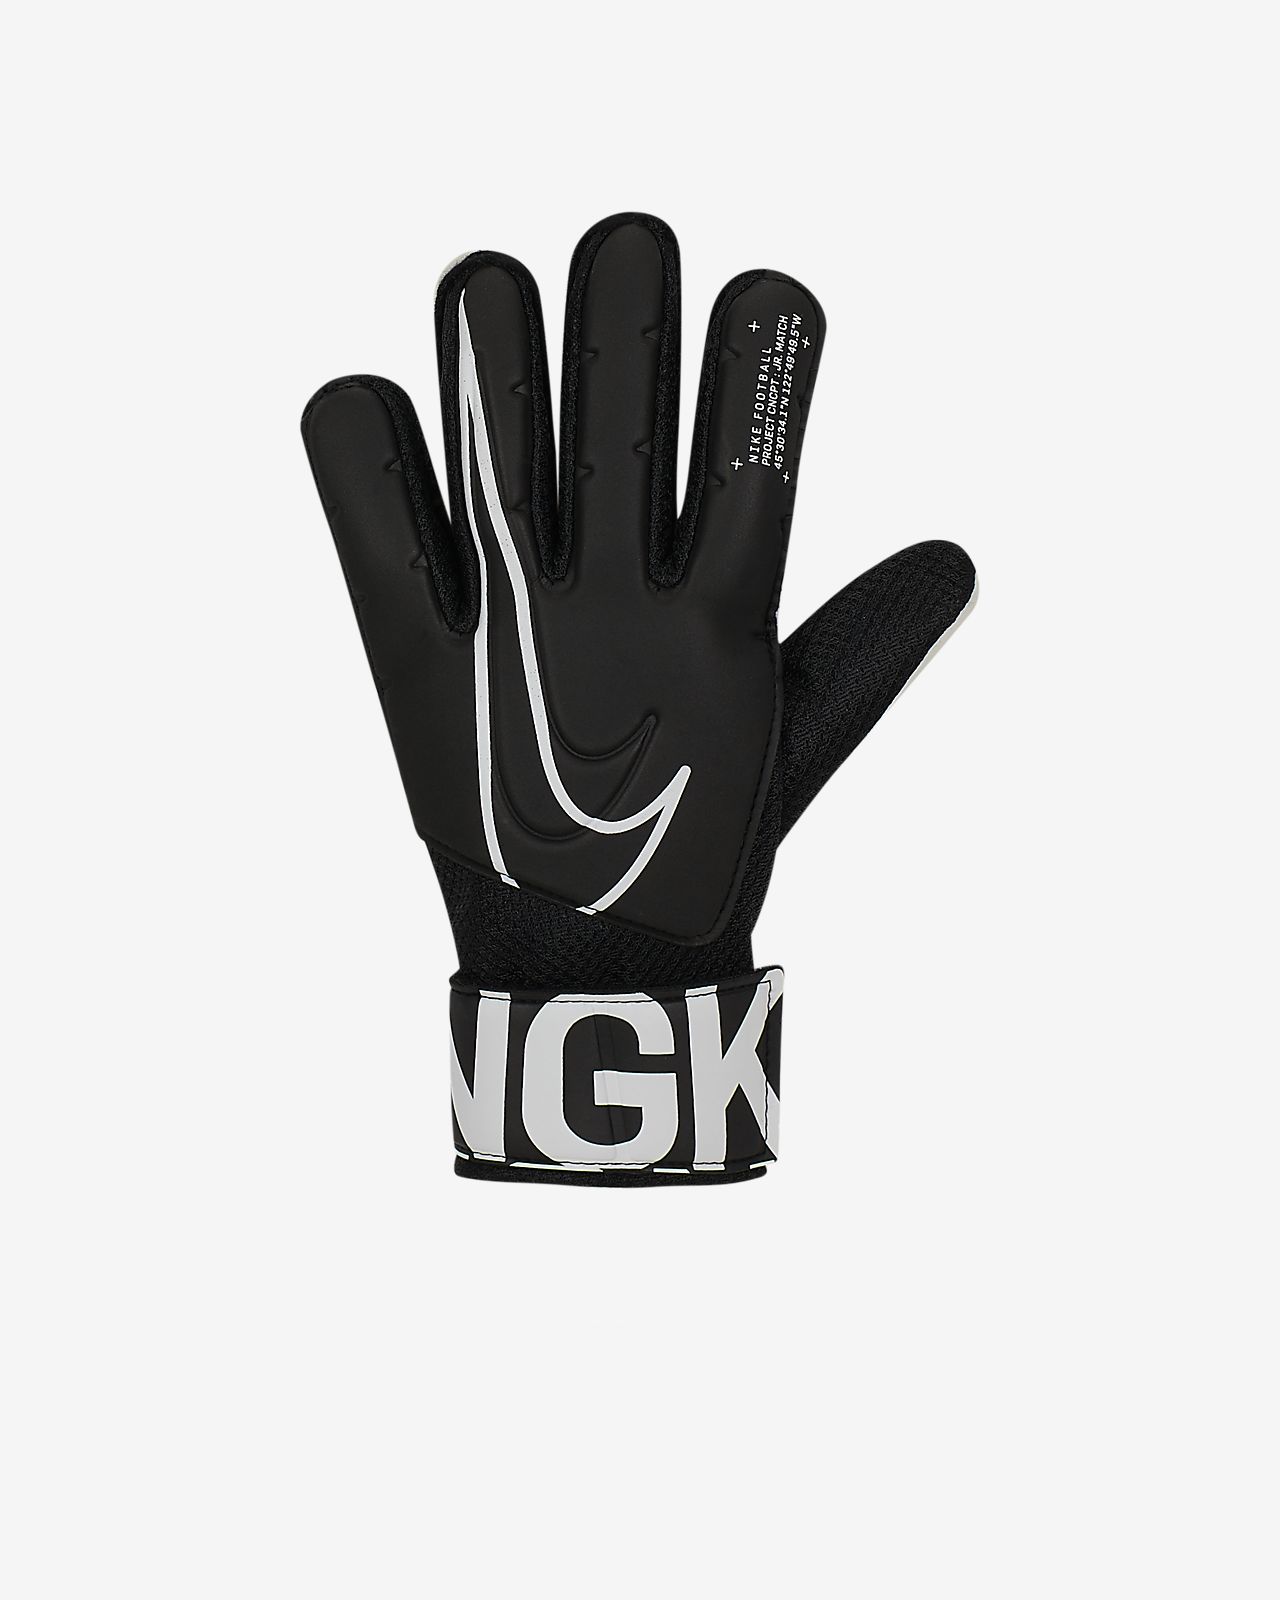 Nike Nfl Stadium Gloves Size Chart